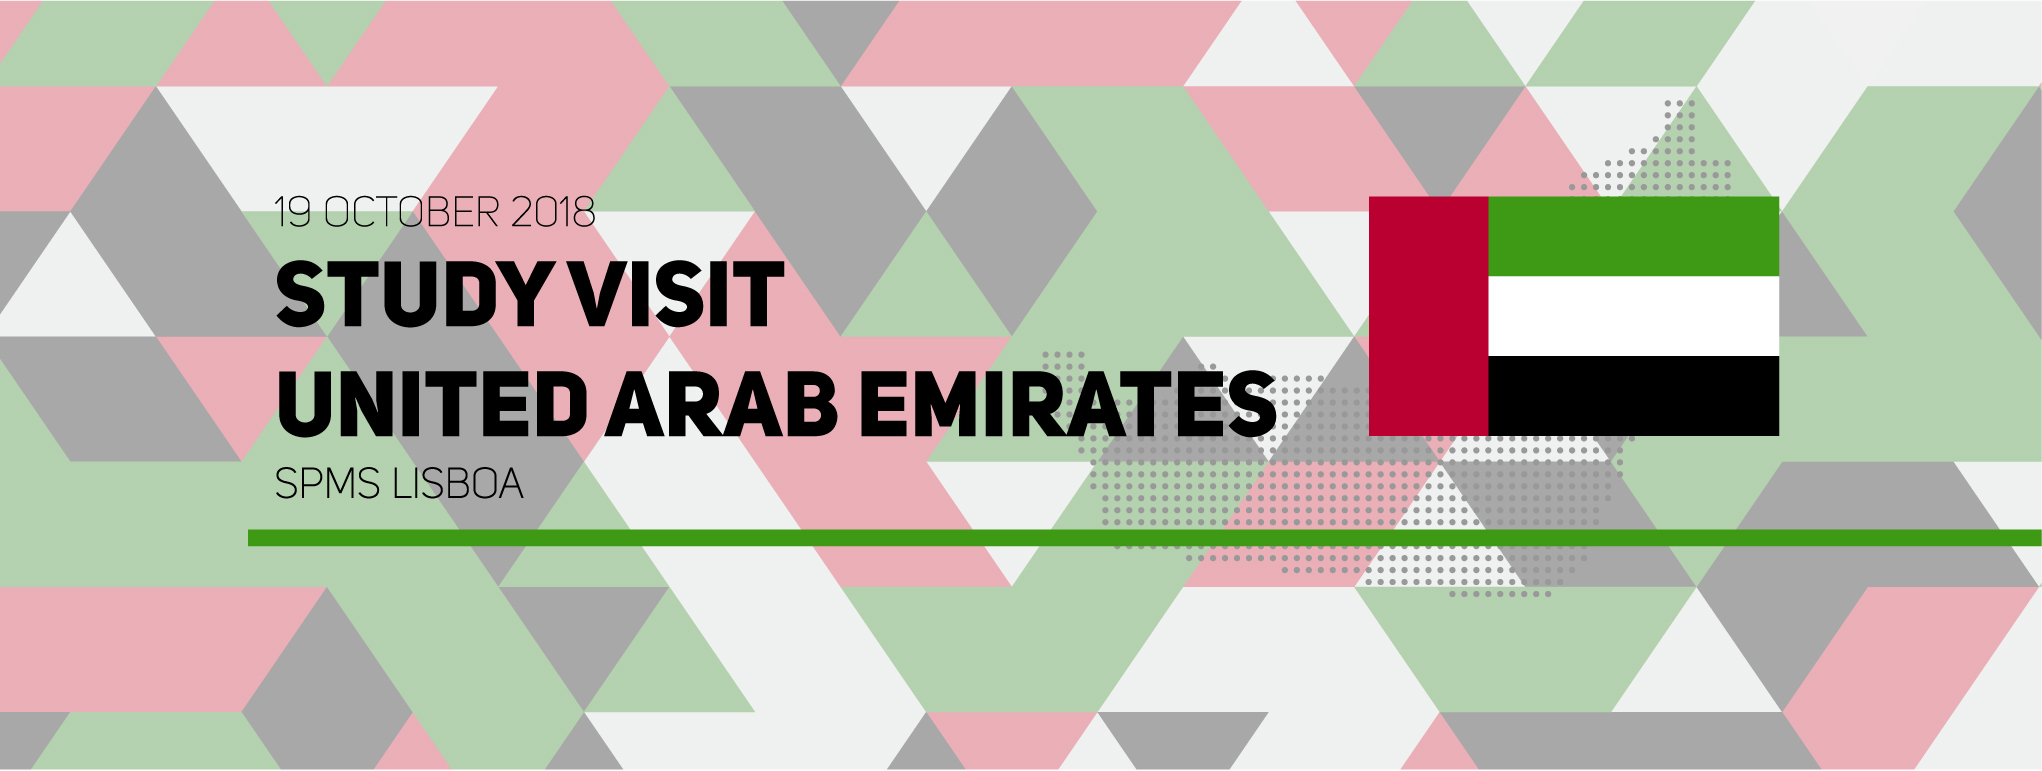 Ministra de Estado para a Felicidade e Bem-Estar dos Emirados Árabes Unidos visita SPMS